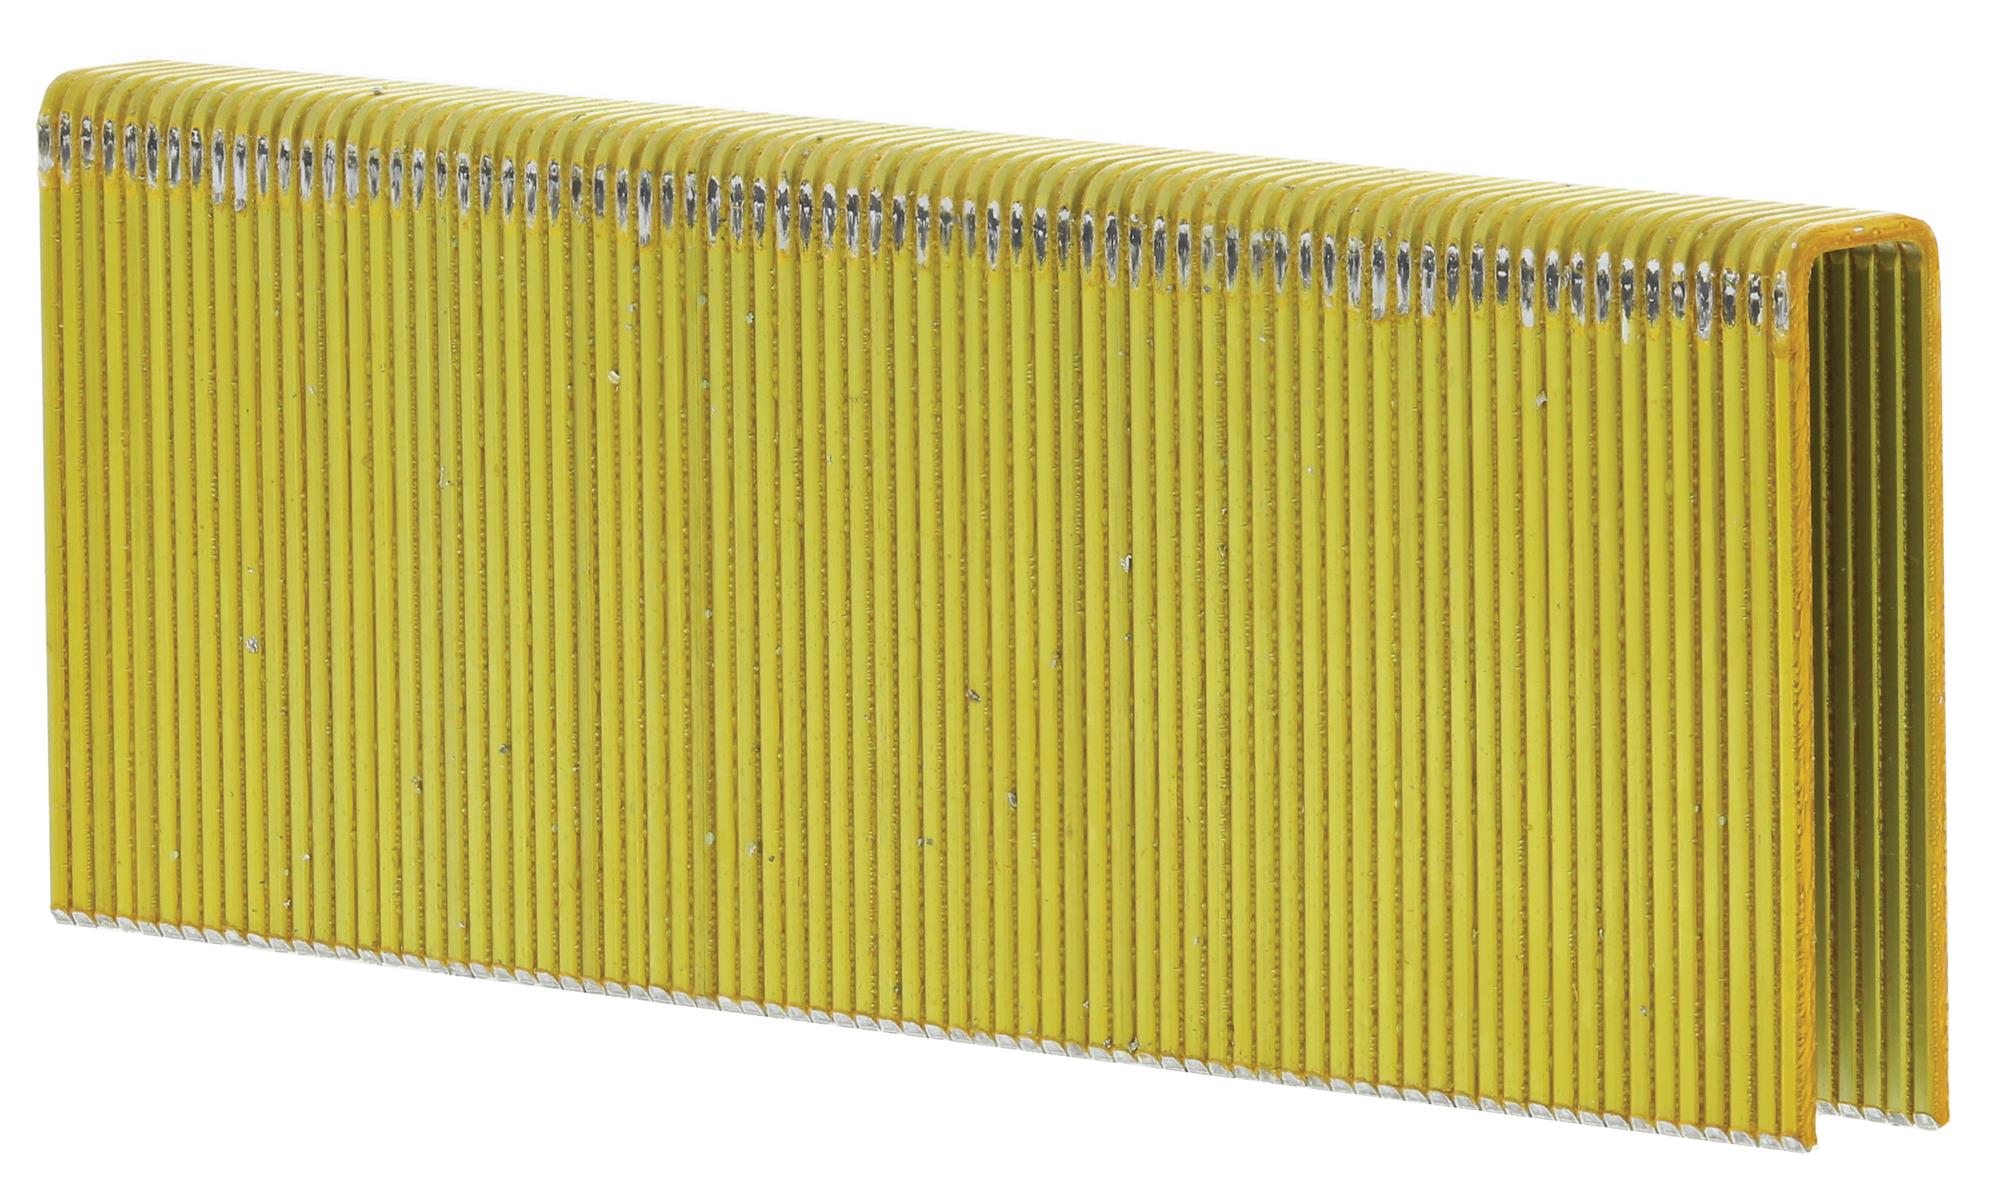 Spony FeZn Haubold KG720 11,25×20×1,53 mm 7 500 ks